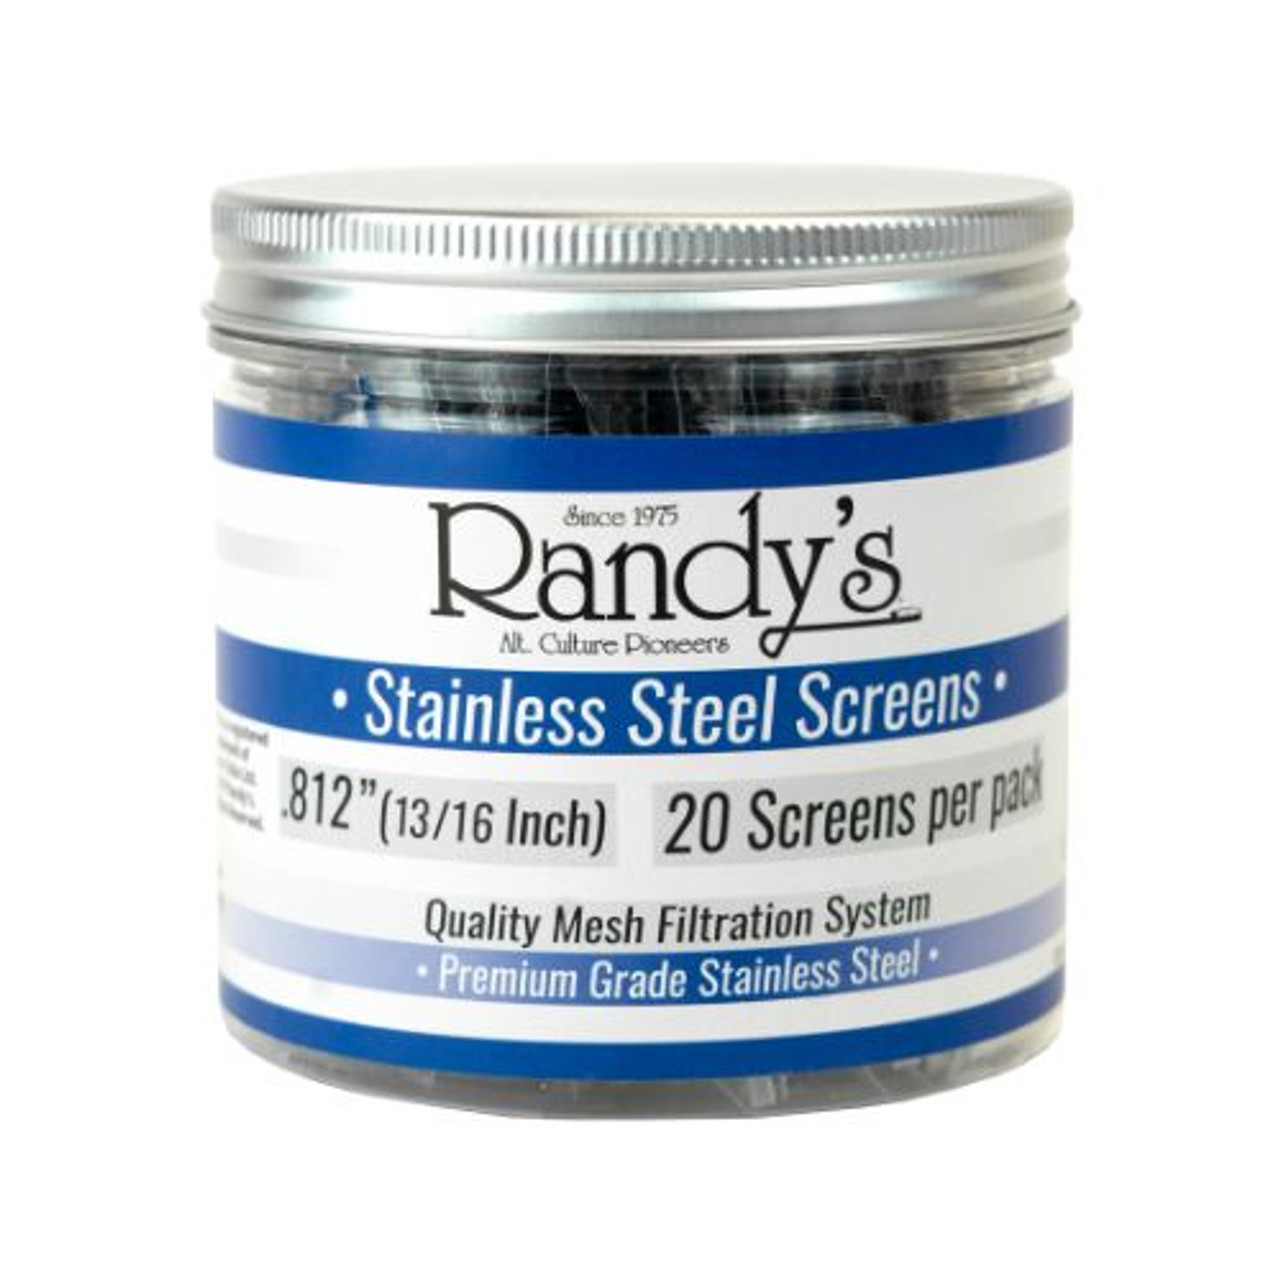 Randy's .812" Stainless Steel Screen Jar - 36 ct.